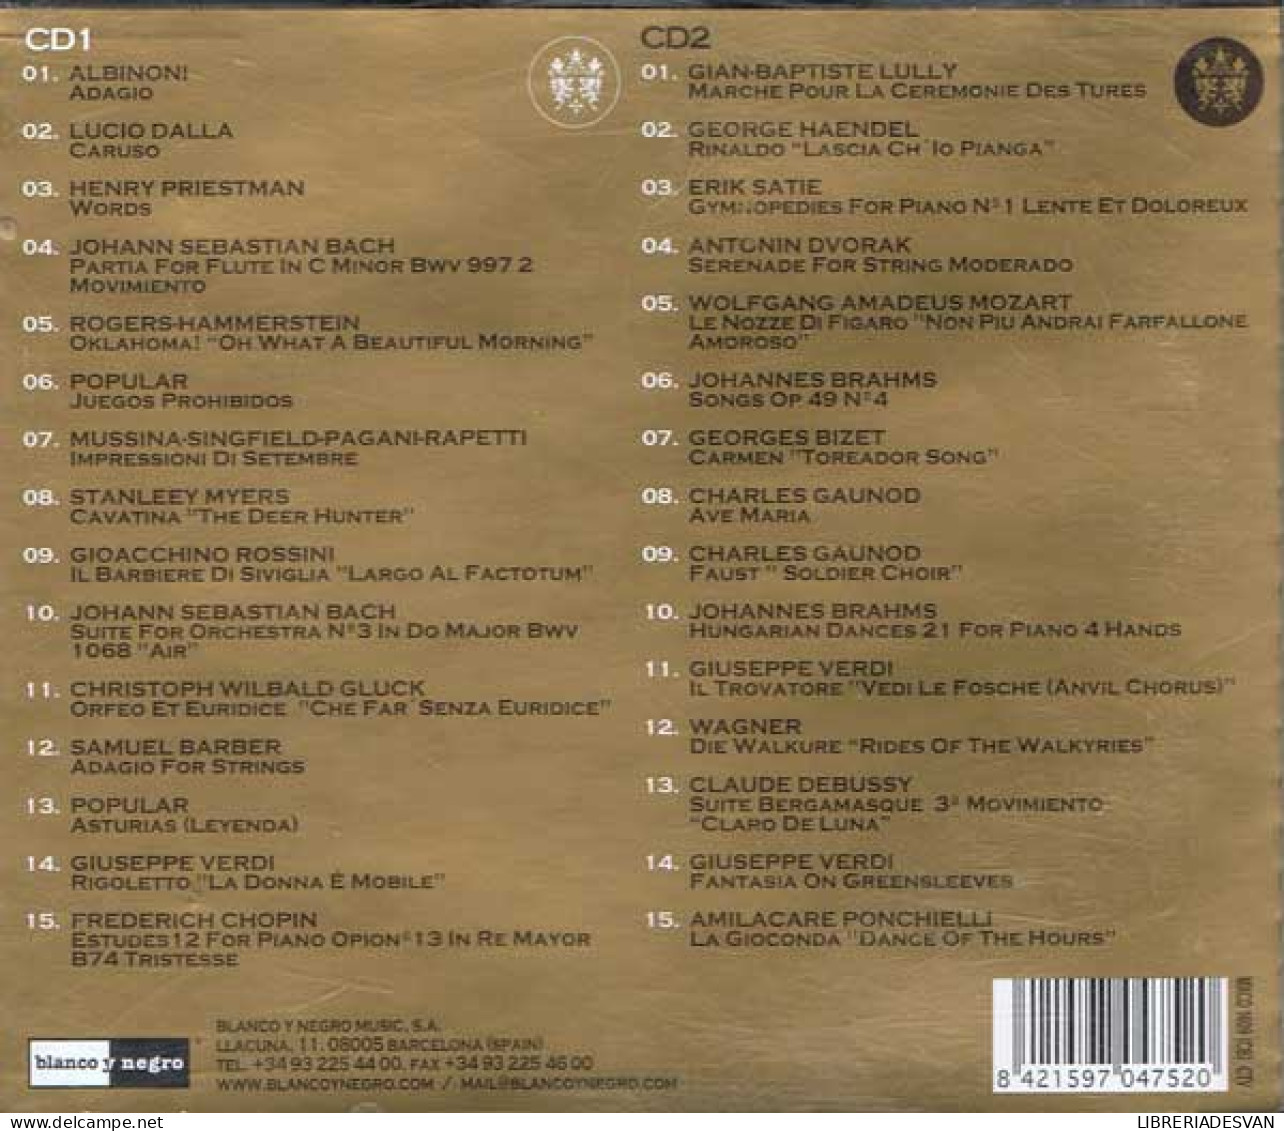 Opera Chillout Vol. 3. 2 CDs - Classique